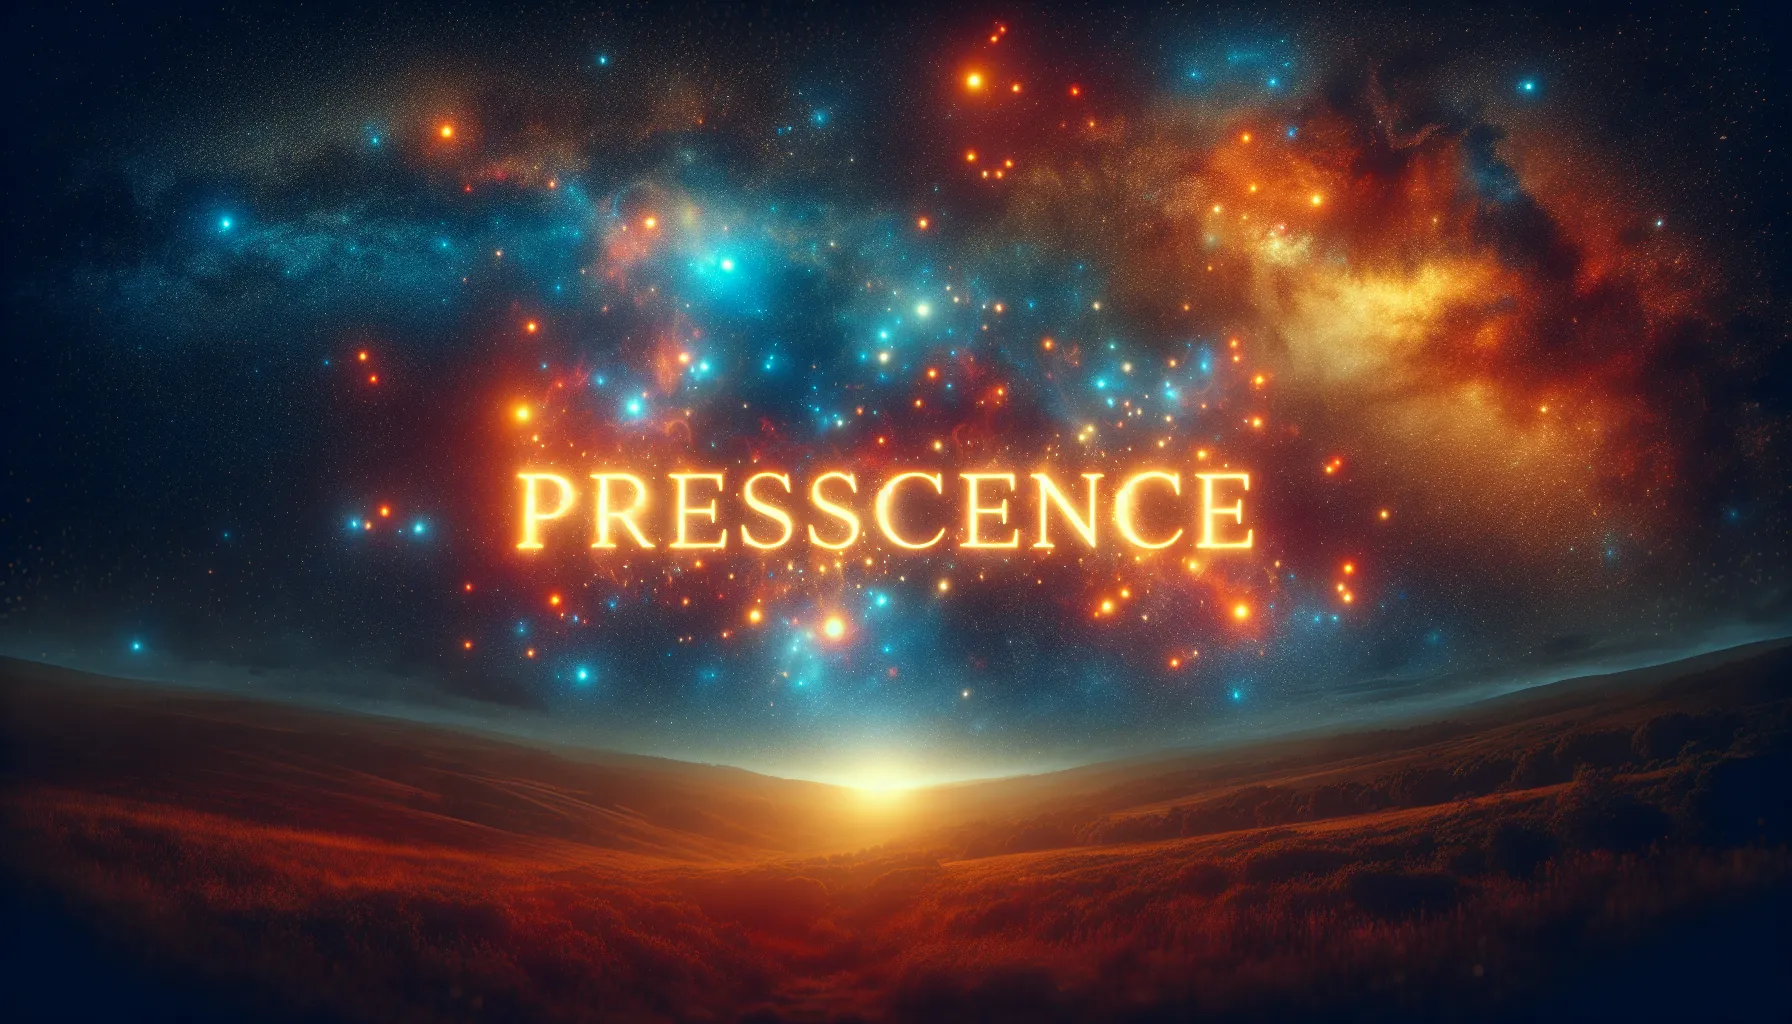 Imagen de una noche estrellada con la palabra 'presciencia' en letras brillantes y resaltadas en el centro